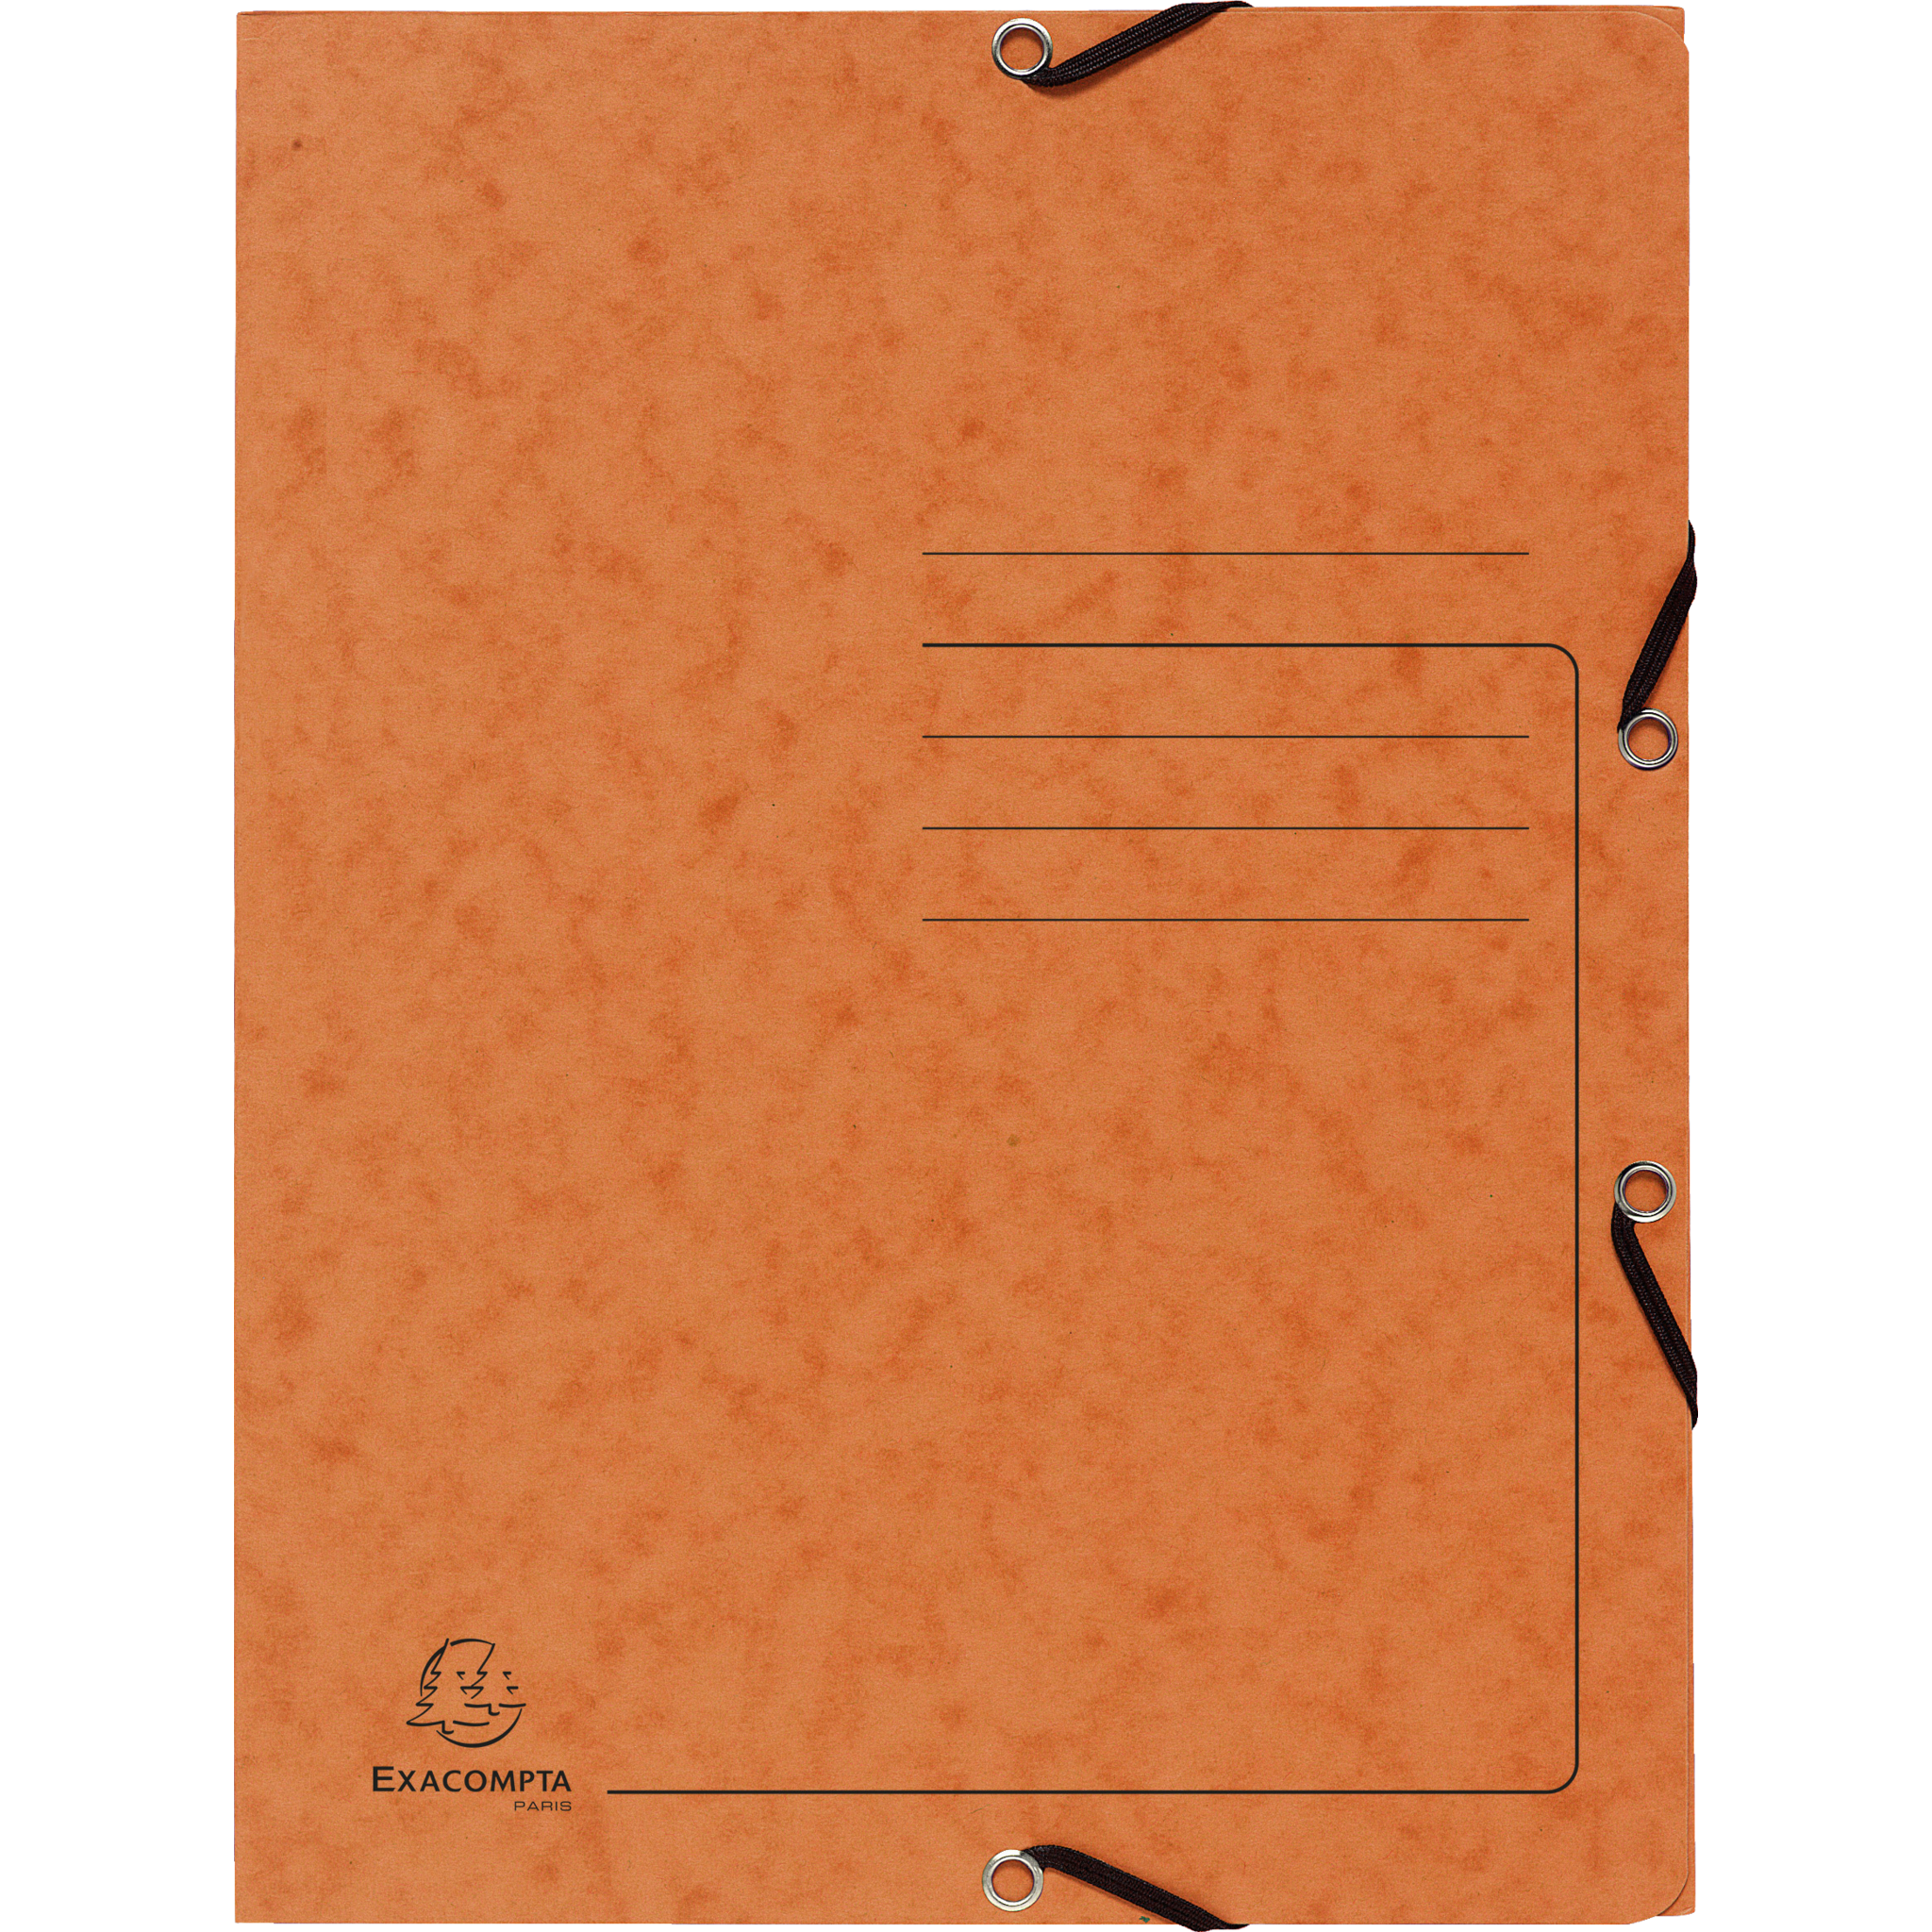 EXACOMPTA Sammelmappe mit Gummizug und 3 Klappen aus Colorspan-Karton 355g/m2 - A4 - Orange